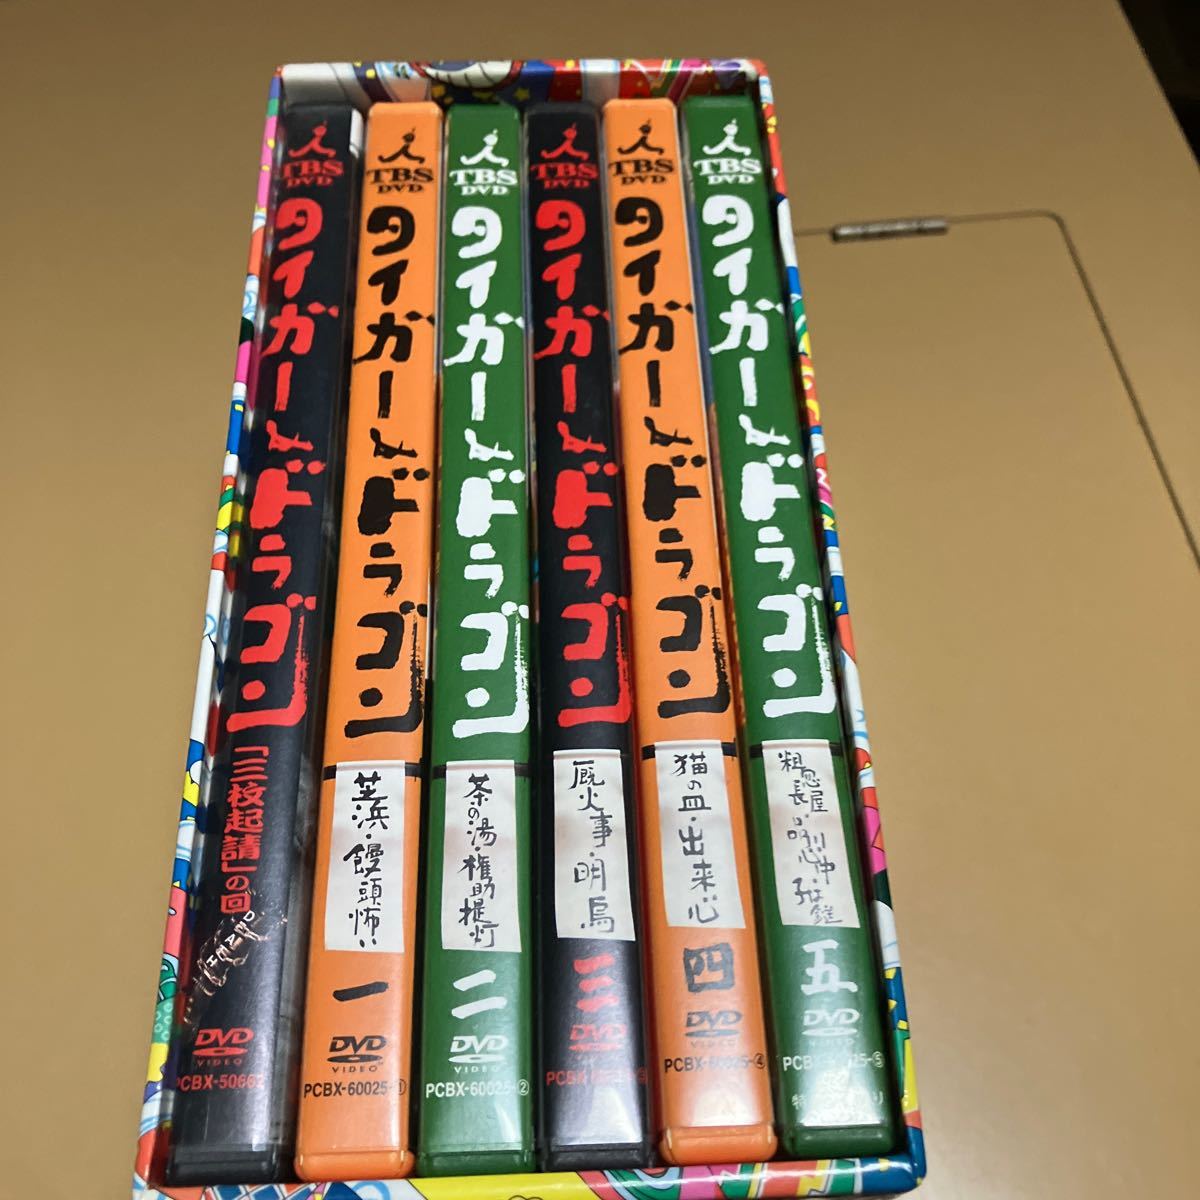 タイガー & ドラゴン DVD-BOX 長瀬智也 岡田准一 宮藤官九郎 落語_画像2